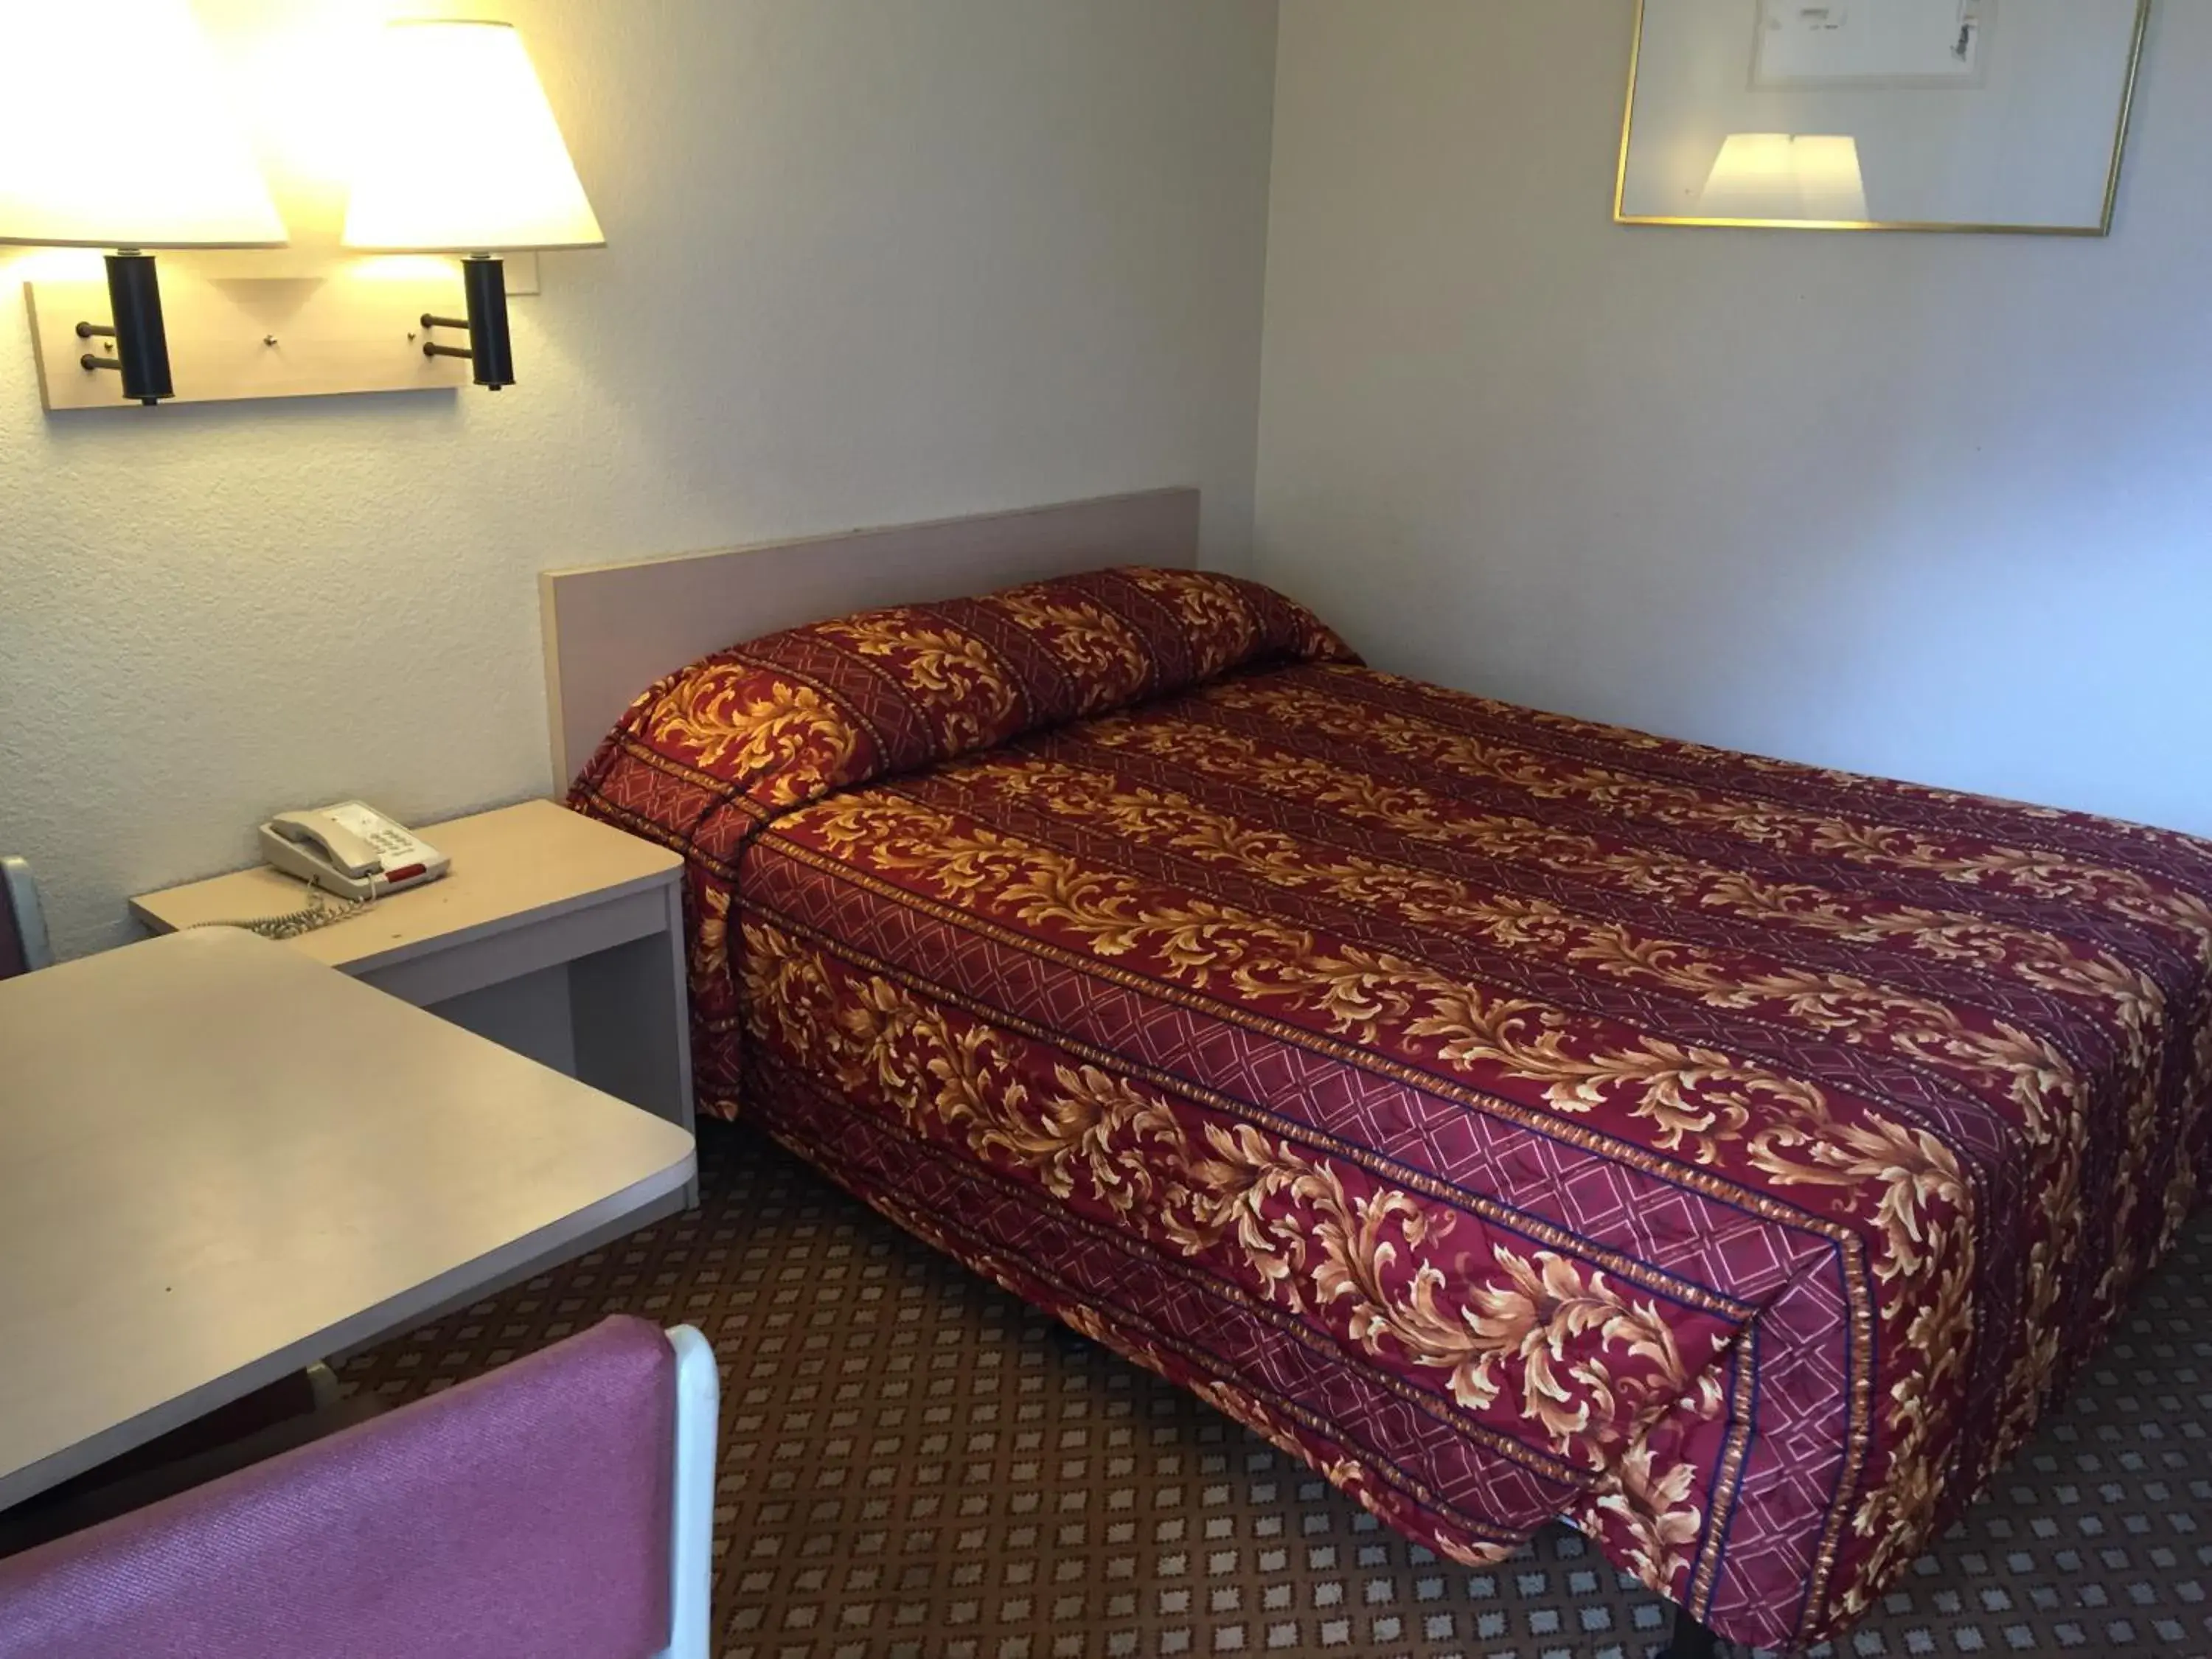 Bed in Hilltop Inn & Suites